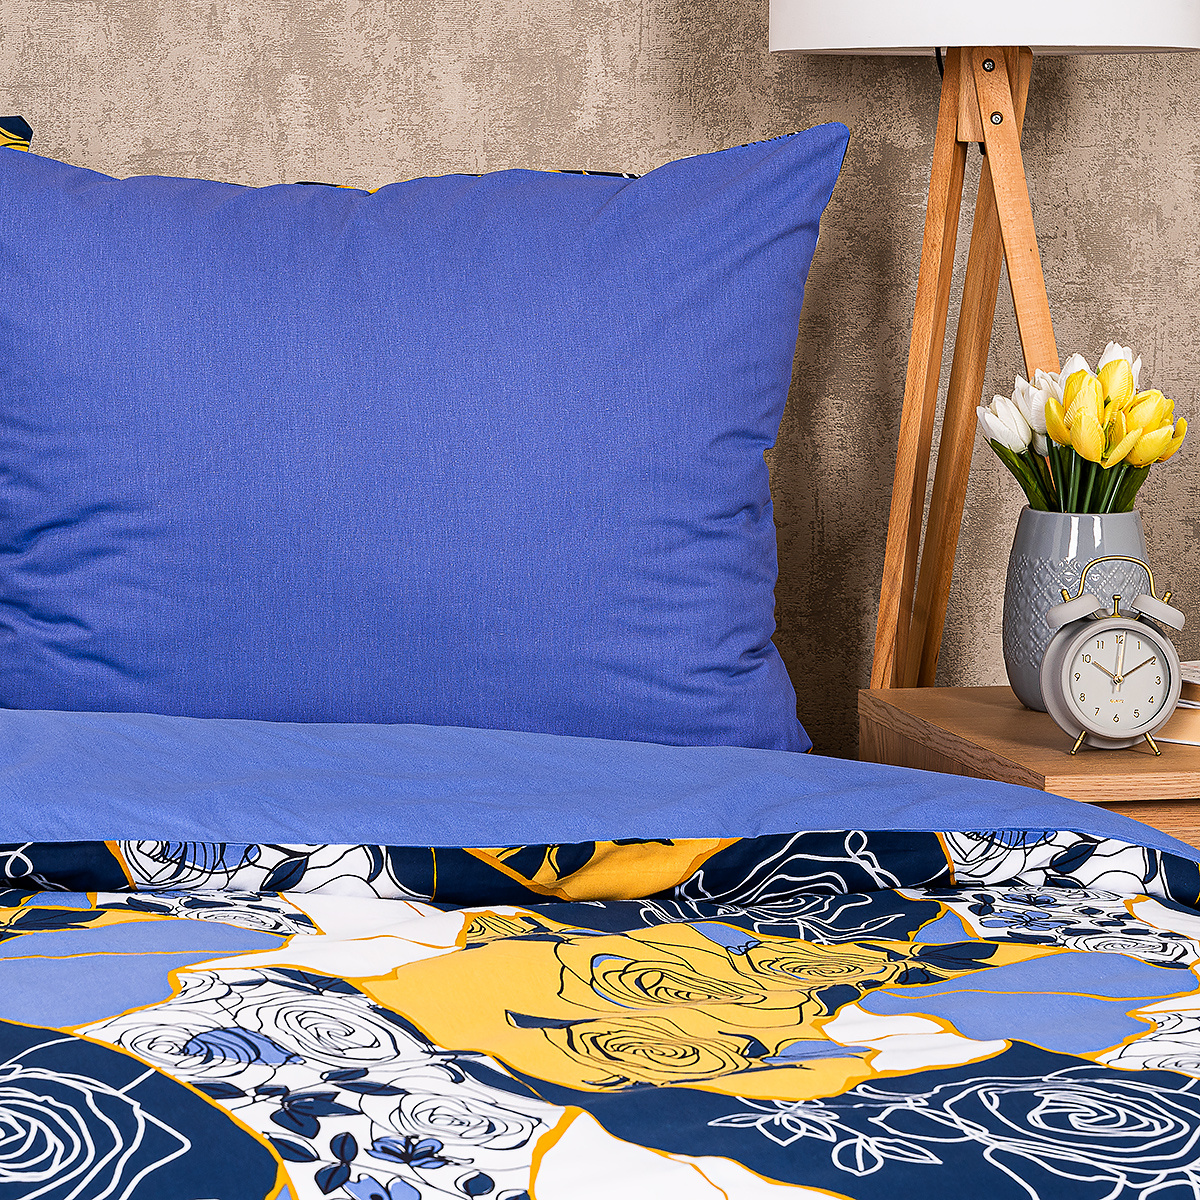 4Home Bavlnené obliečky Blue rose, 160 x 200 cm, 70 x 80 cm